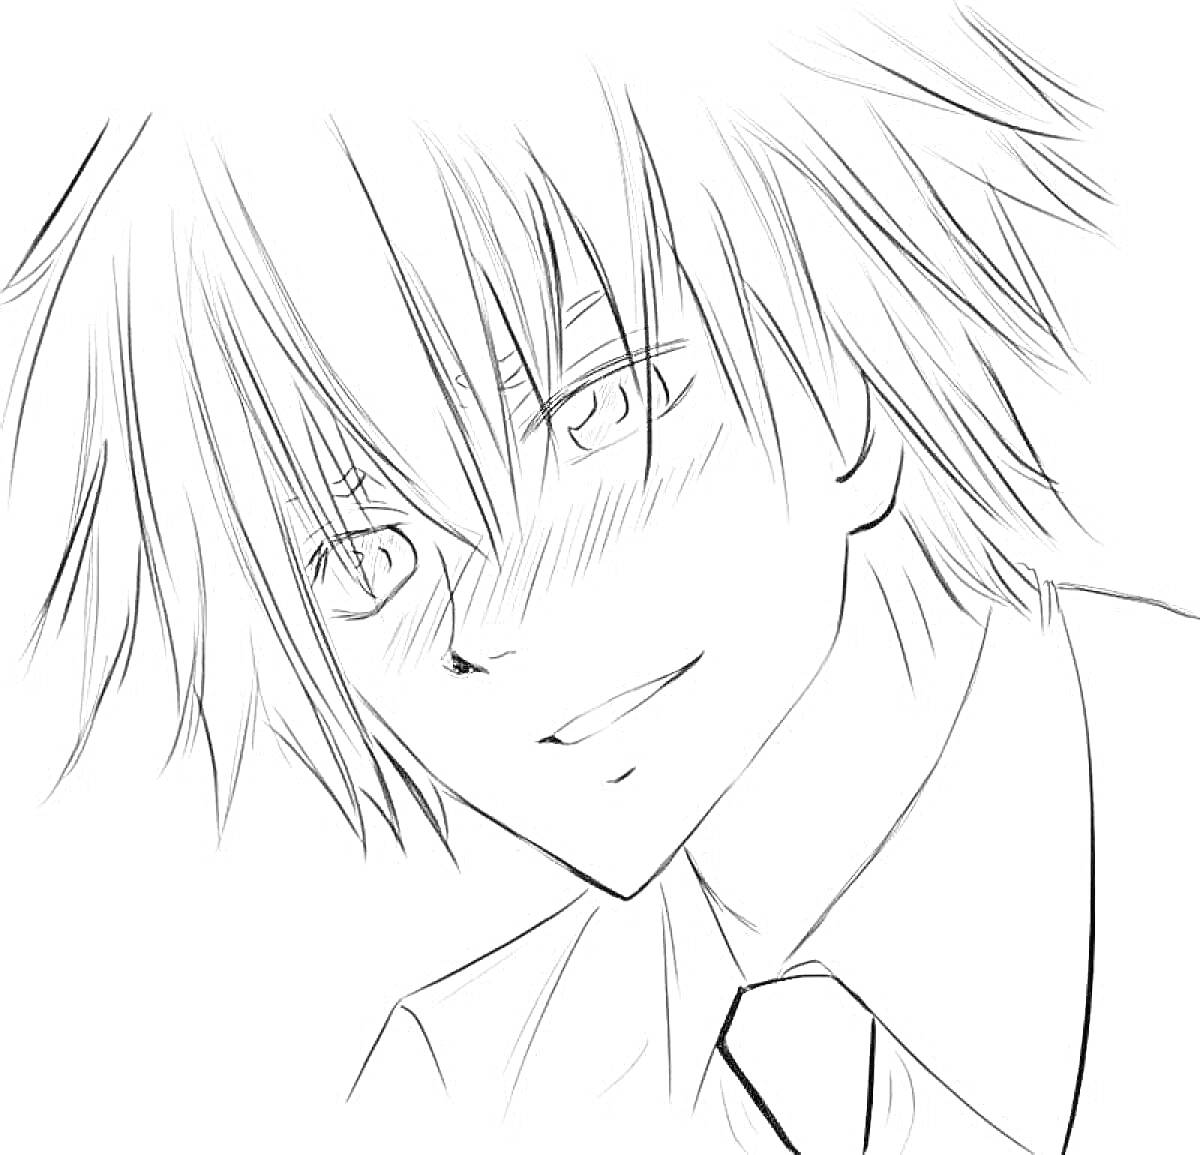 Раскраска аниме мальчик с растрёпанными волосами и в галстуке, улыбается